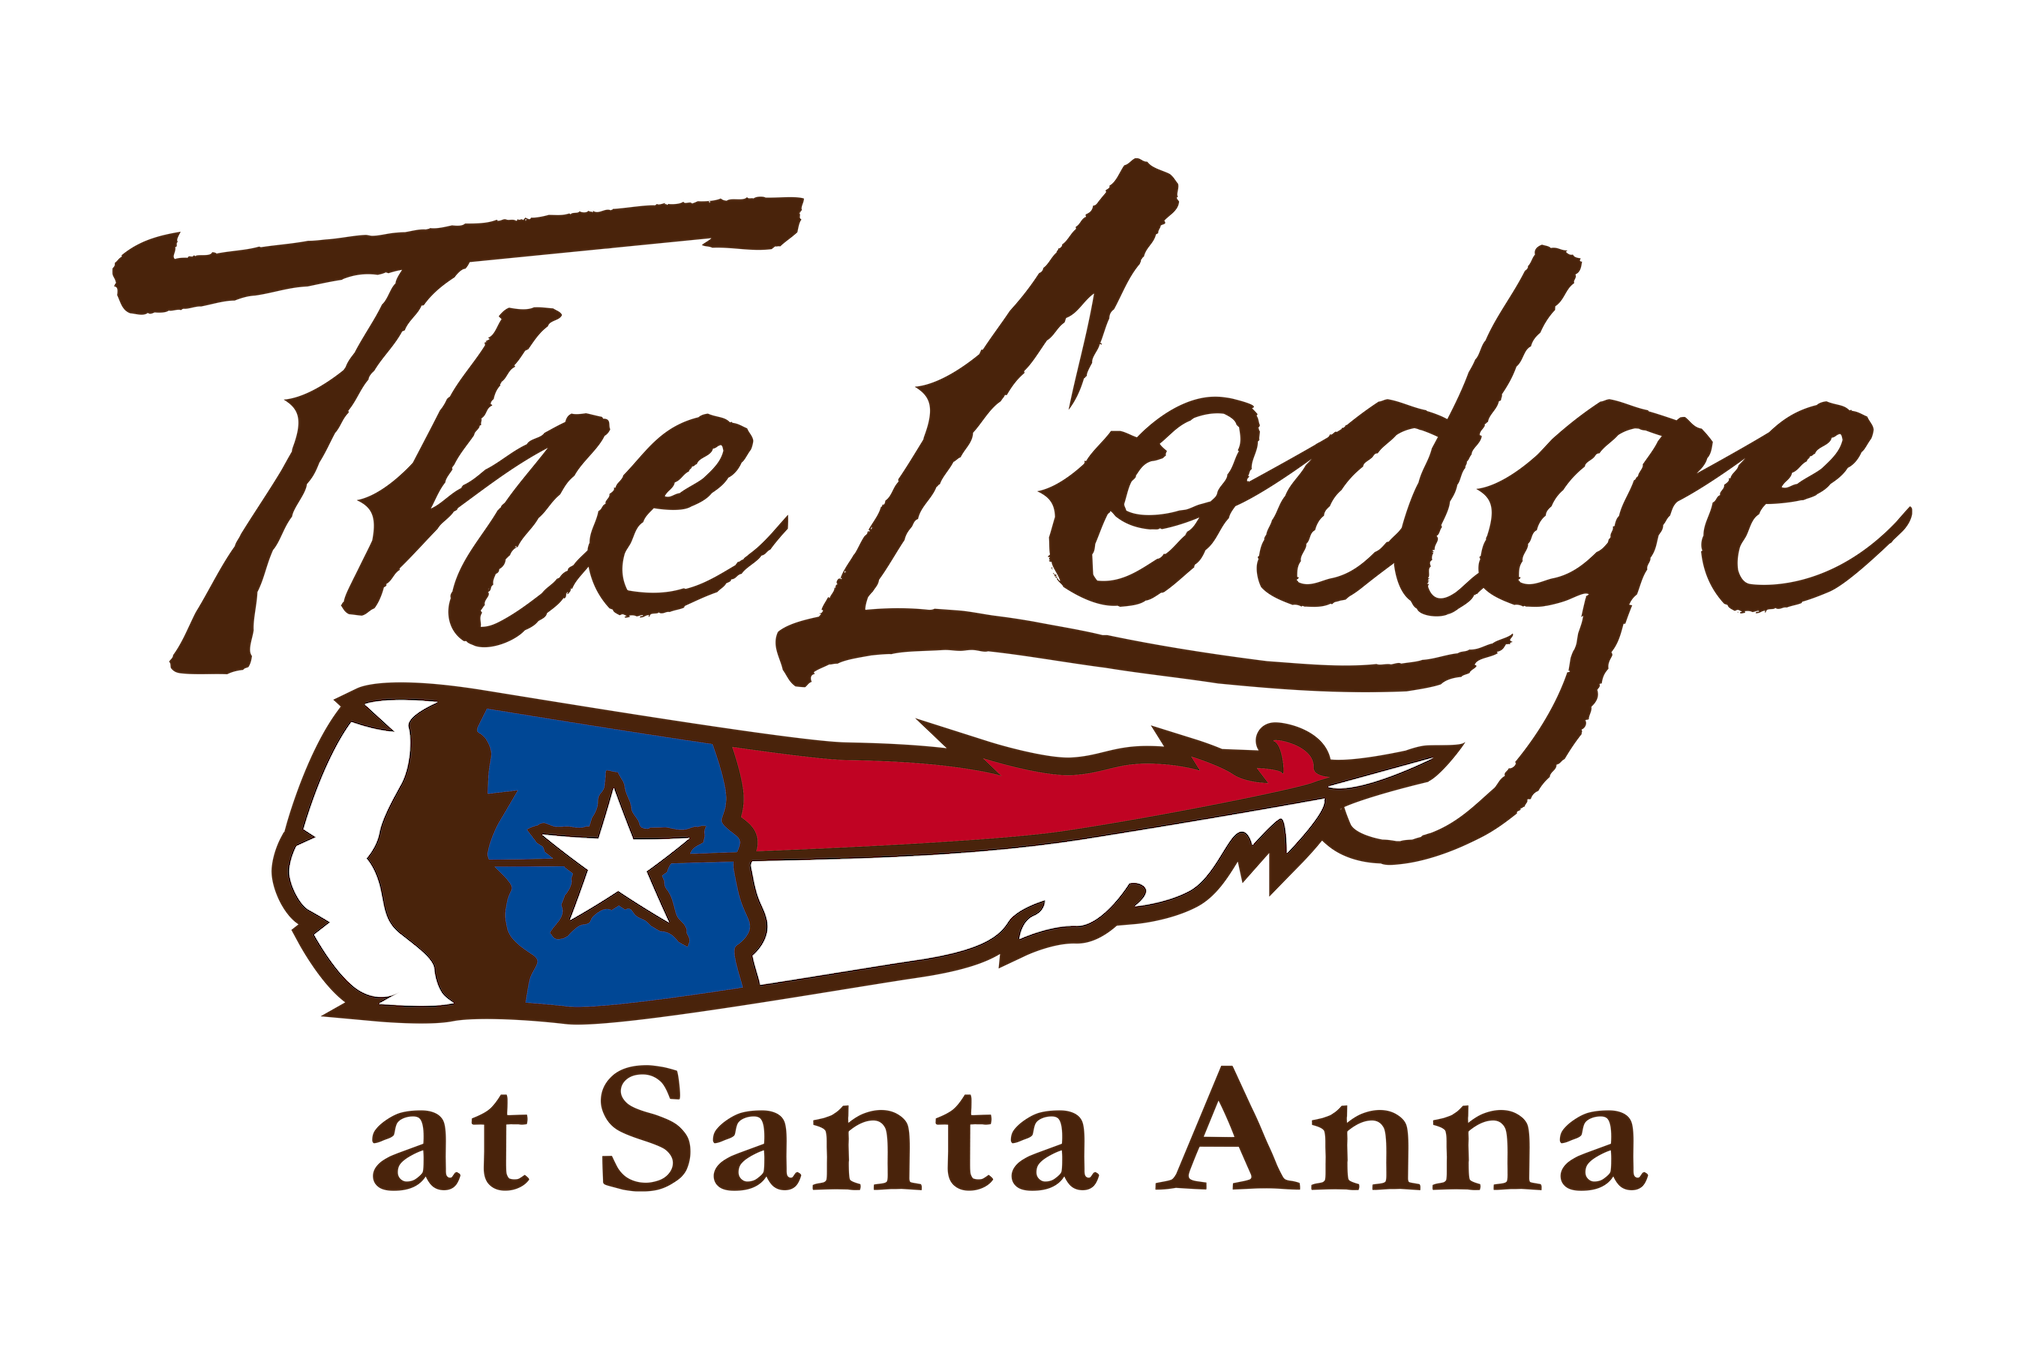 The Lodge at Santa Anna